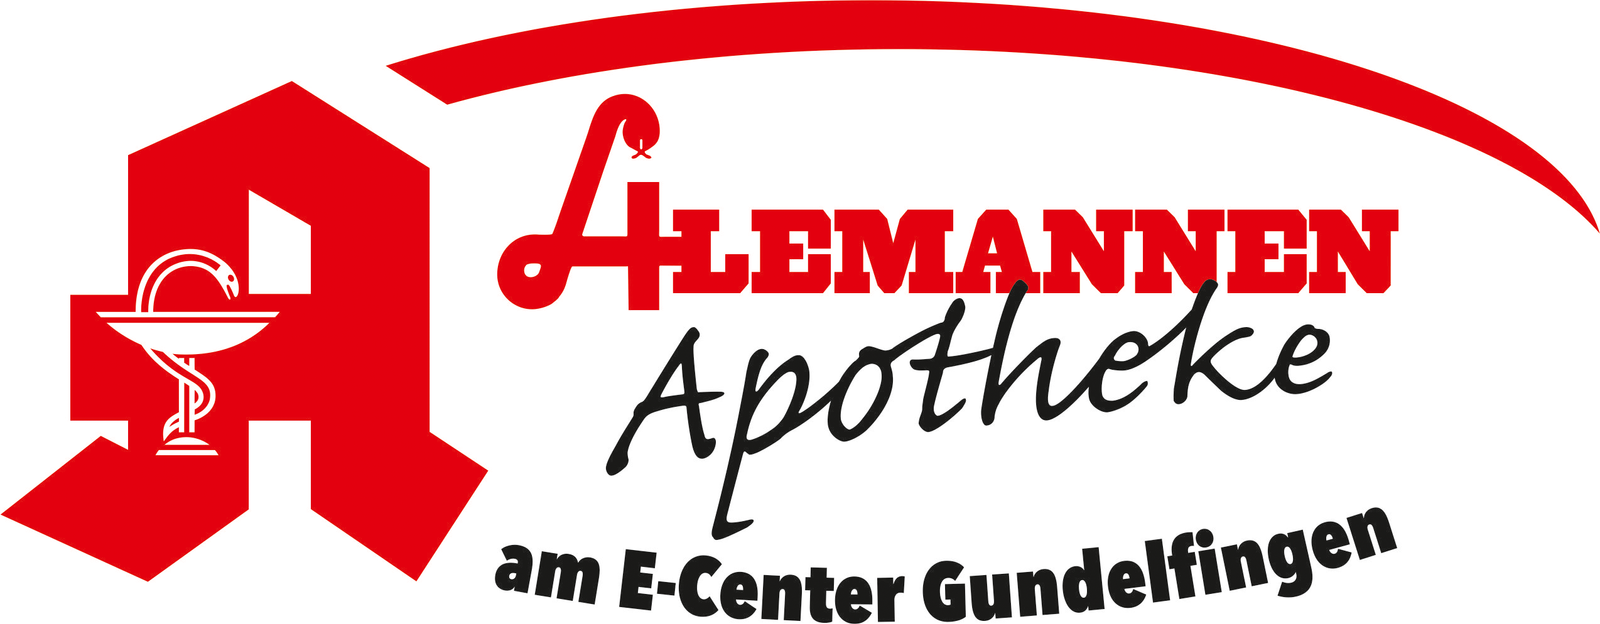 Alemannen-Apotheke am E-Center